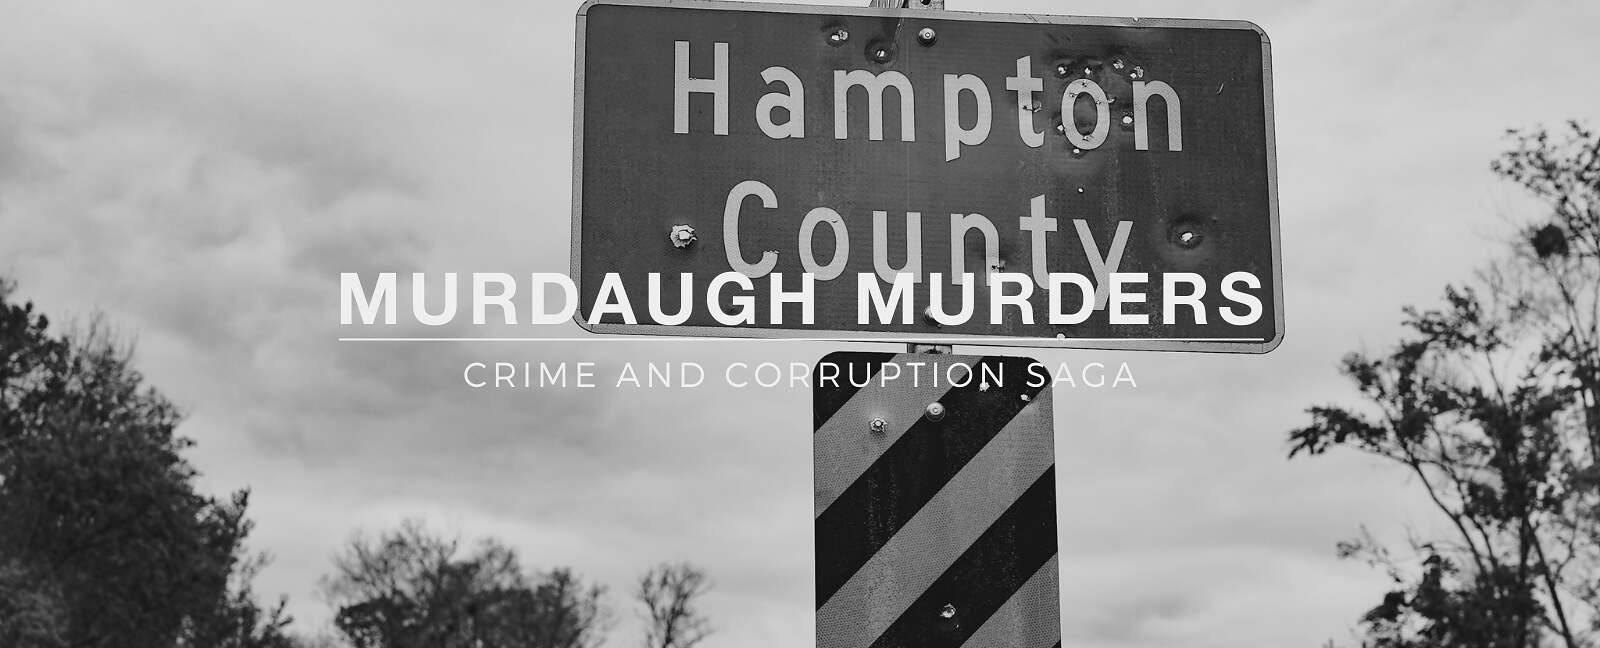 Alex Murdaugh Murder Trial Hampton County roadsign